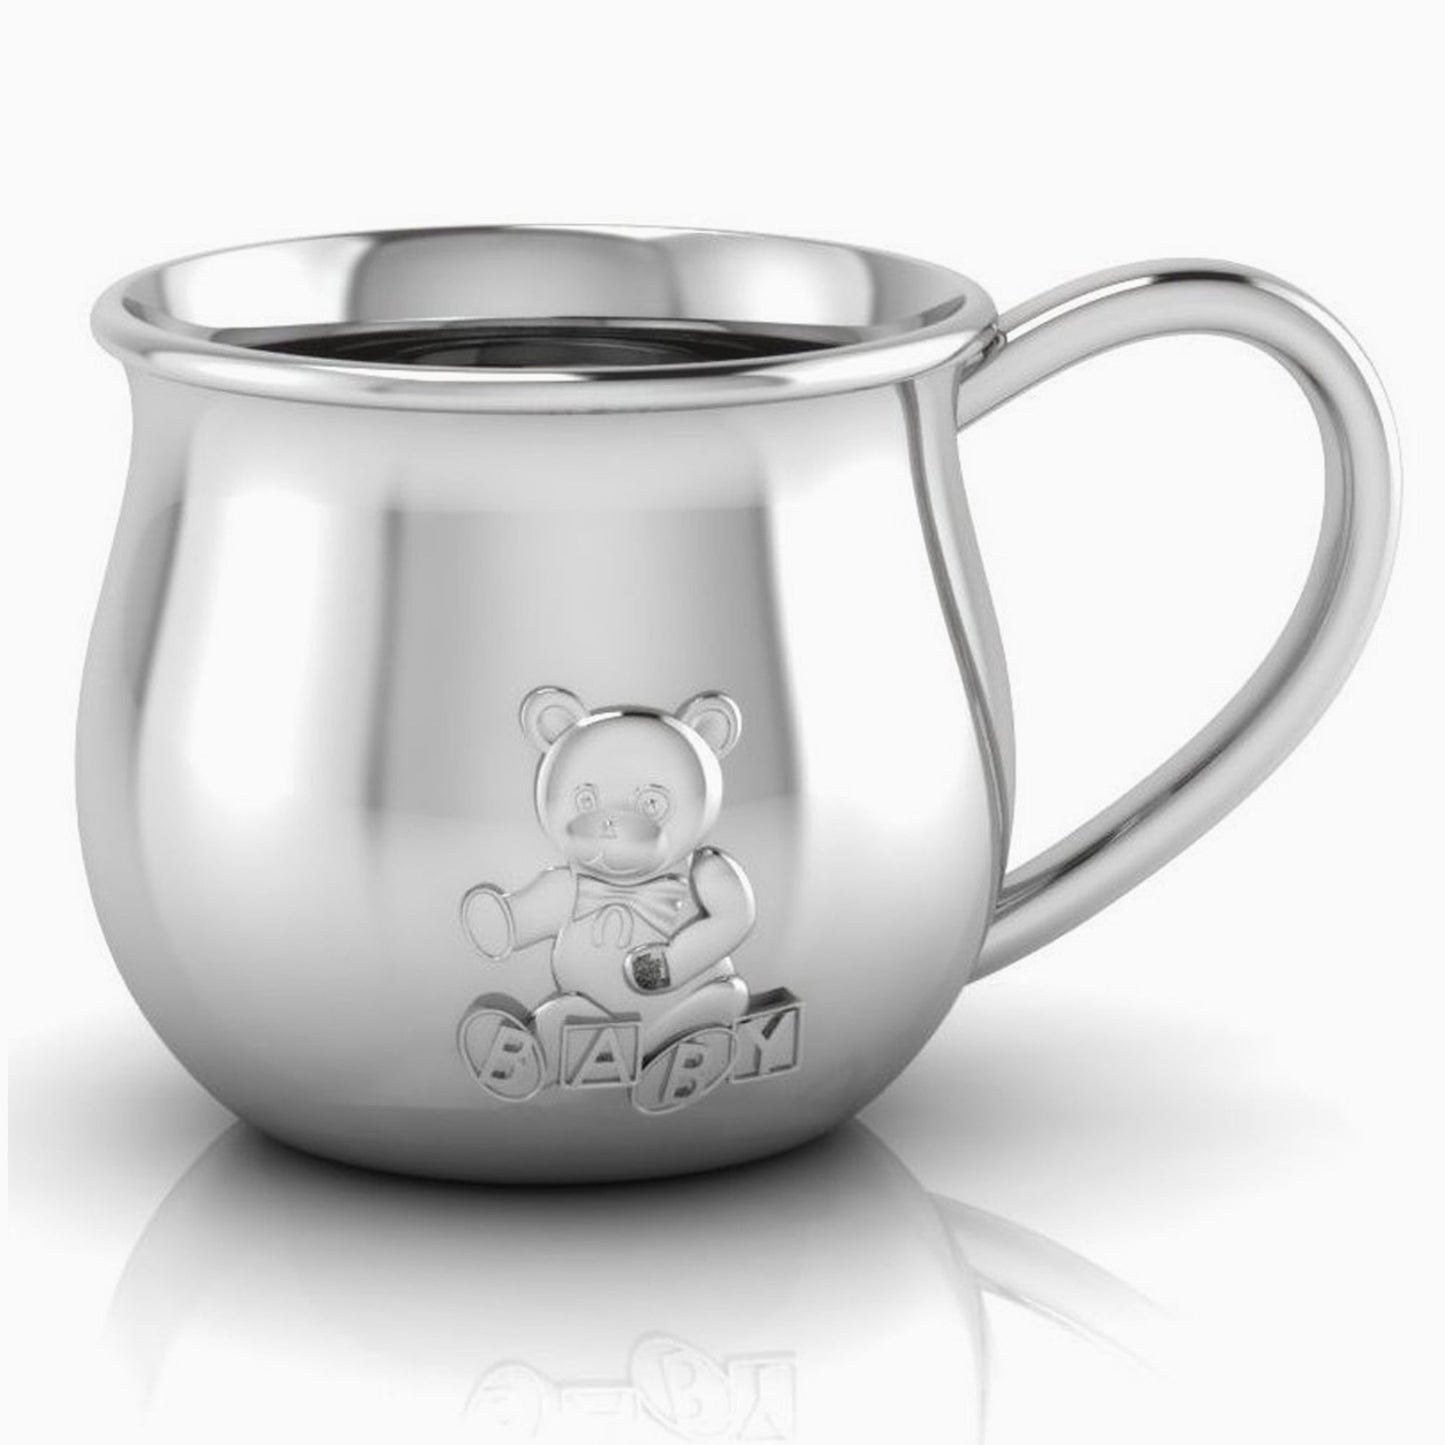 Sterling Silver Teddy Embossed Baby Cup by Krysaliis